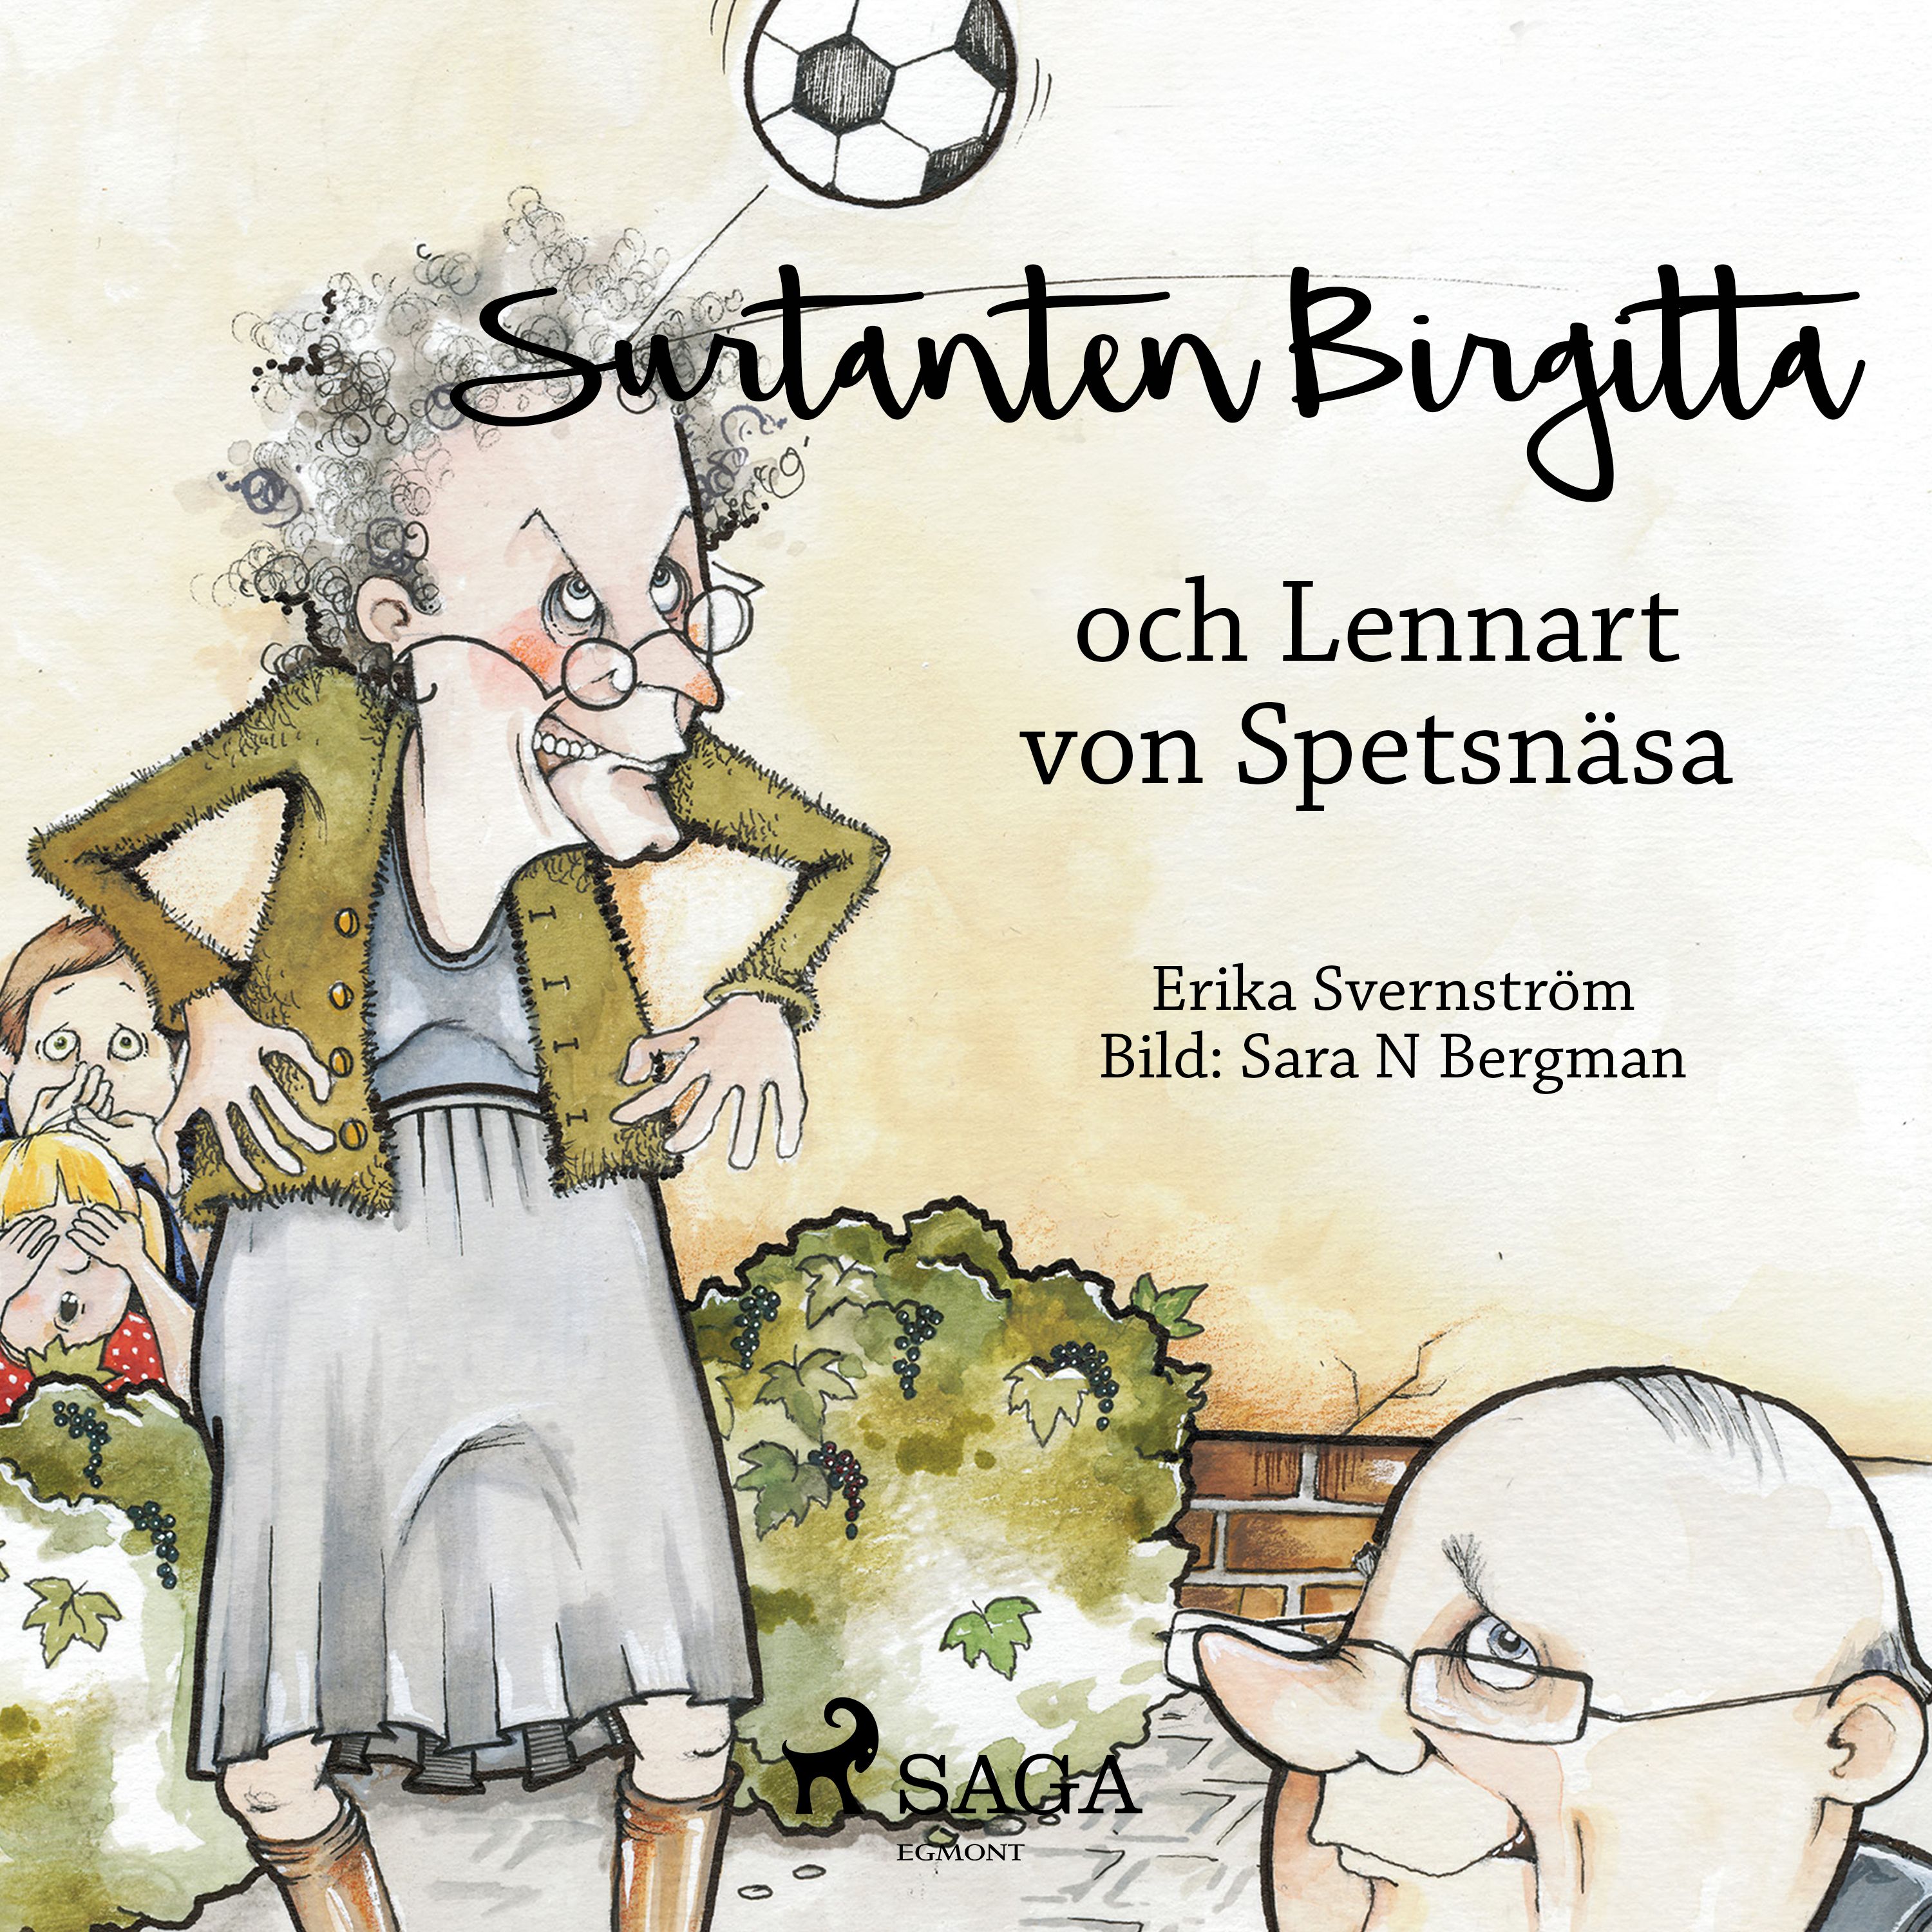 Surtanten Birgitta och Lennart von Spetsnäsa, ljudbok av Erika Svernström